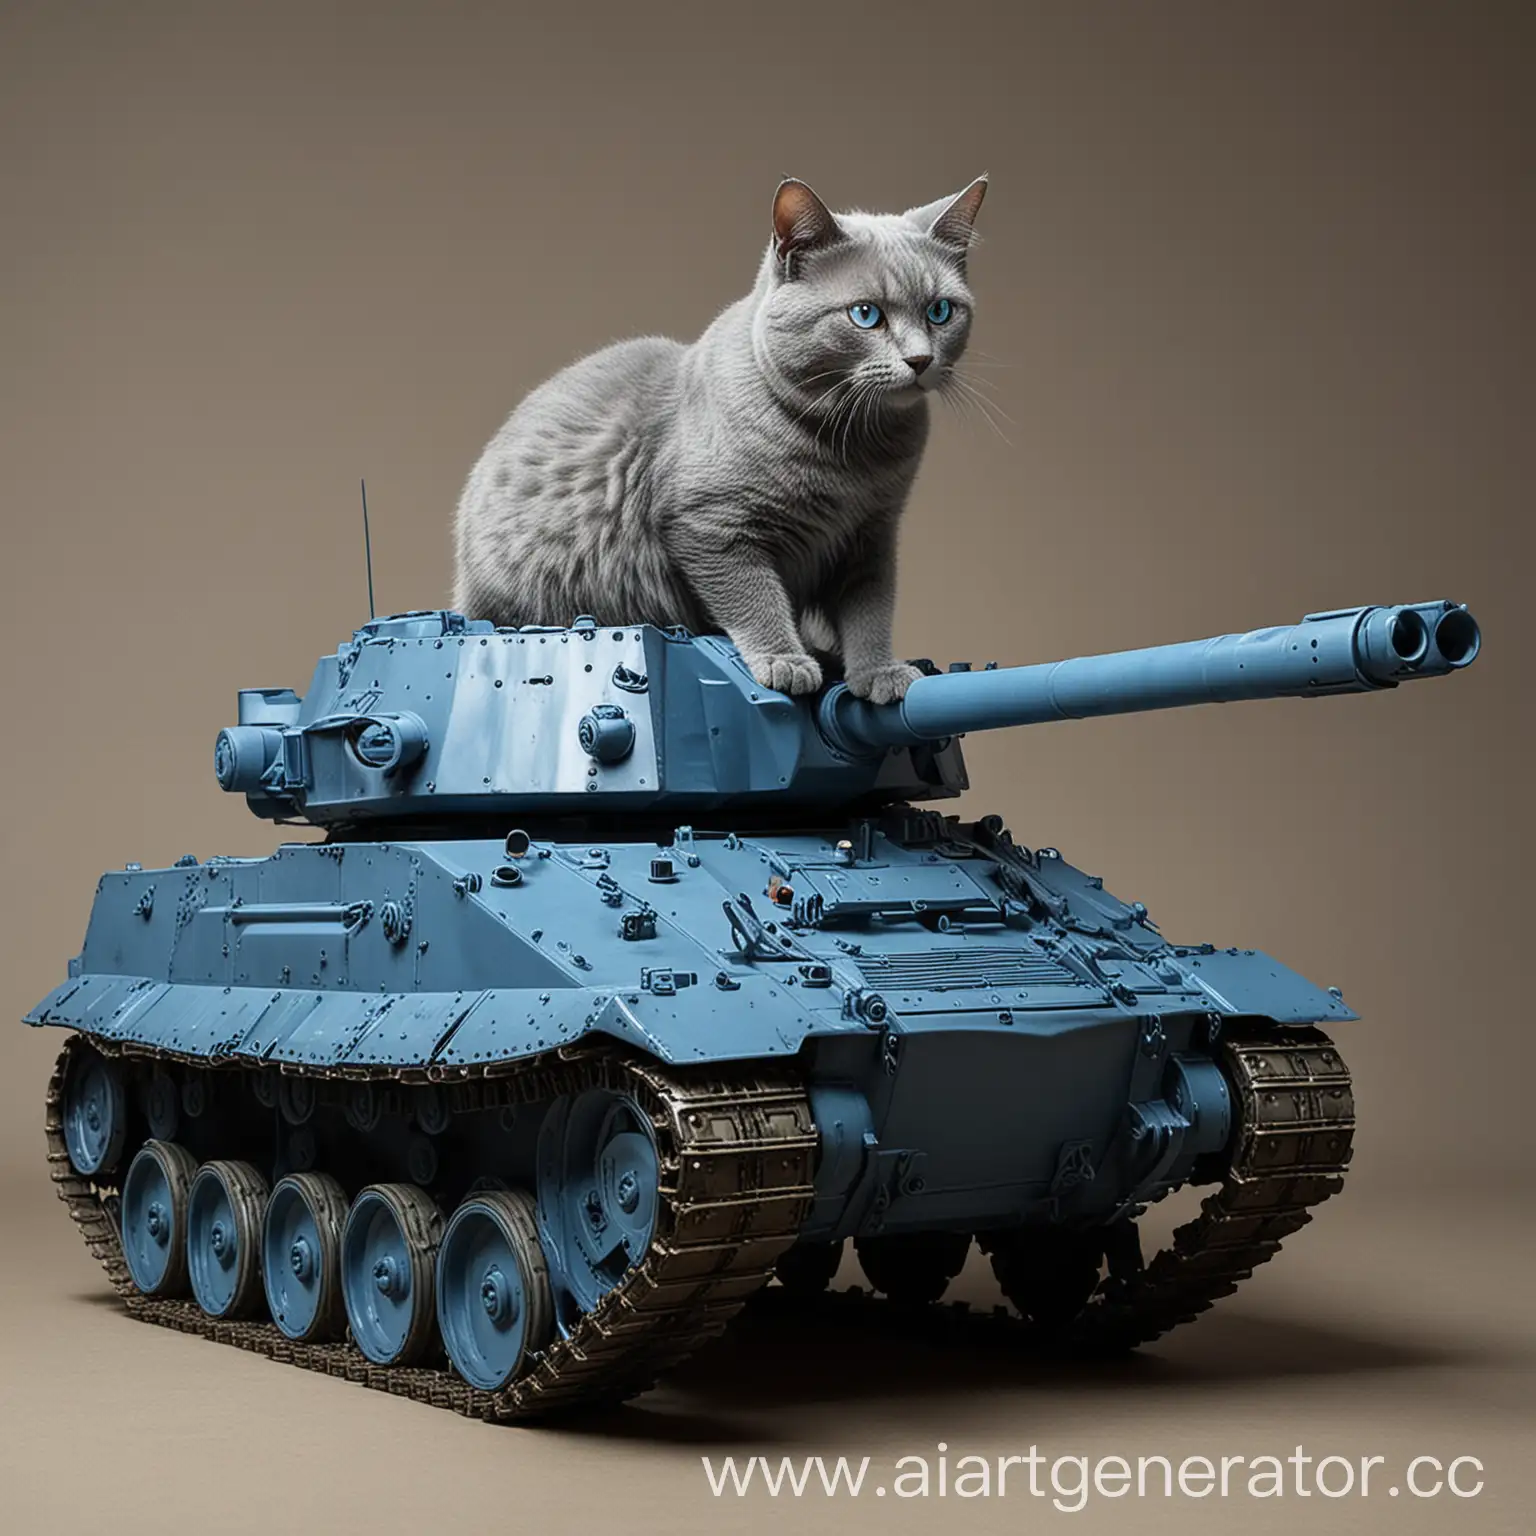 Синий кошачий танк за 1000000$